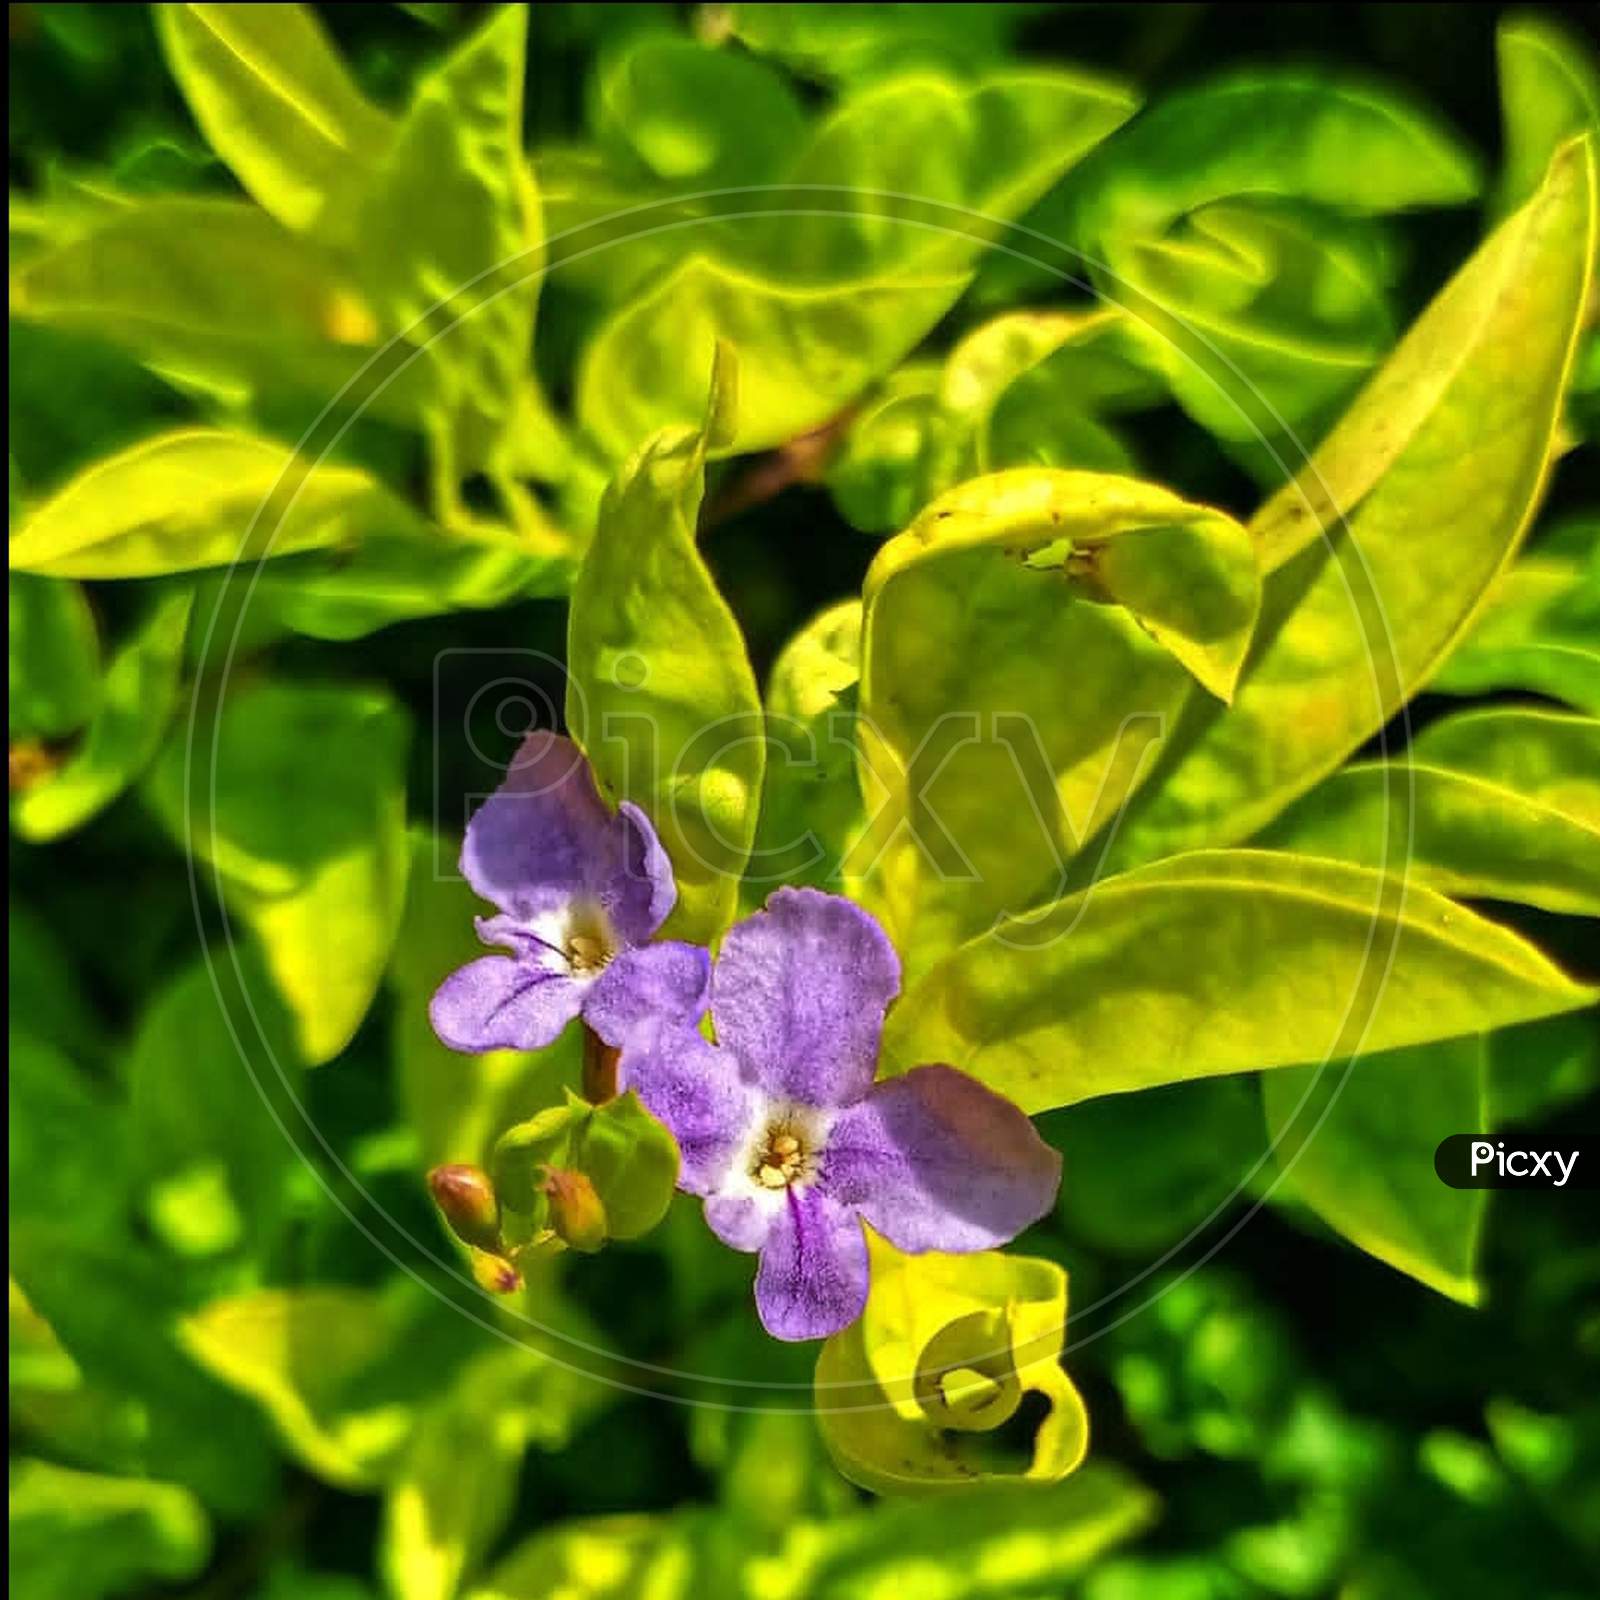 Purple×Remove  Violet×Remove  Flowering plant×Remove  Green×Remove  Petal×Remove  Plant×Remove  Flower×Remove  Close-up×Remove  Bougainvillea×Remove  Leaf×Remove